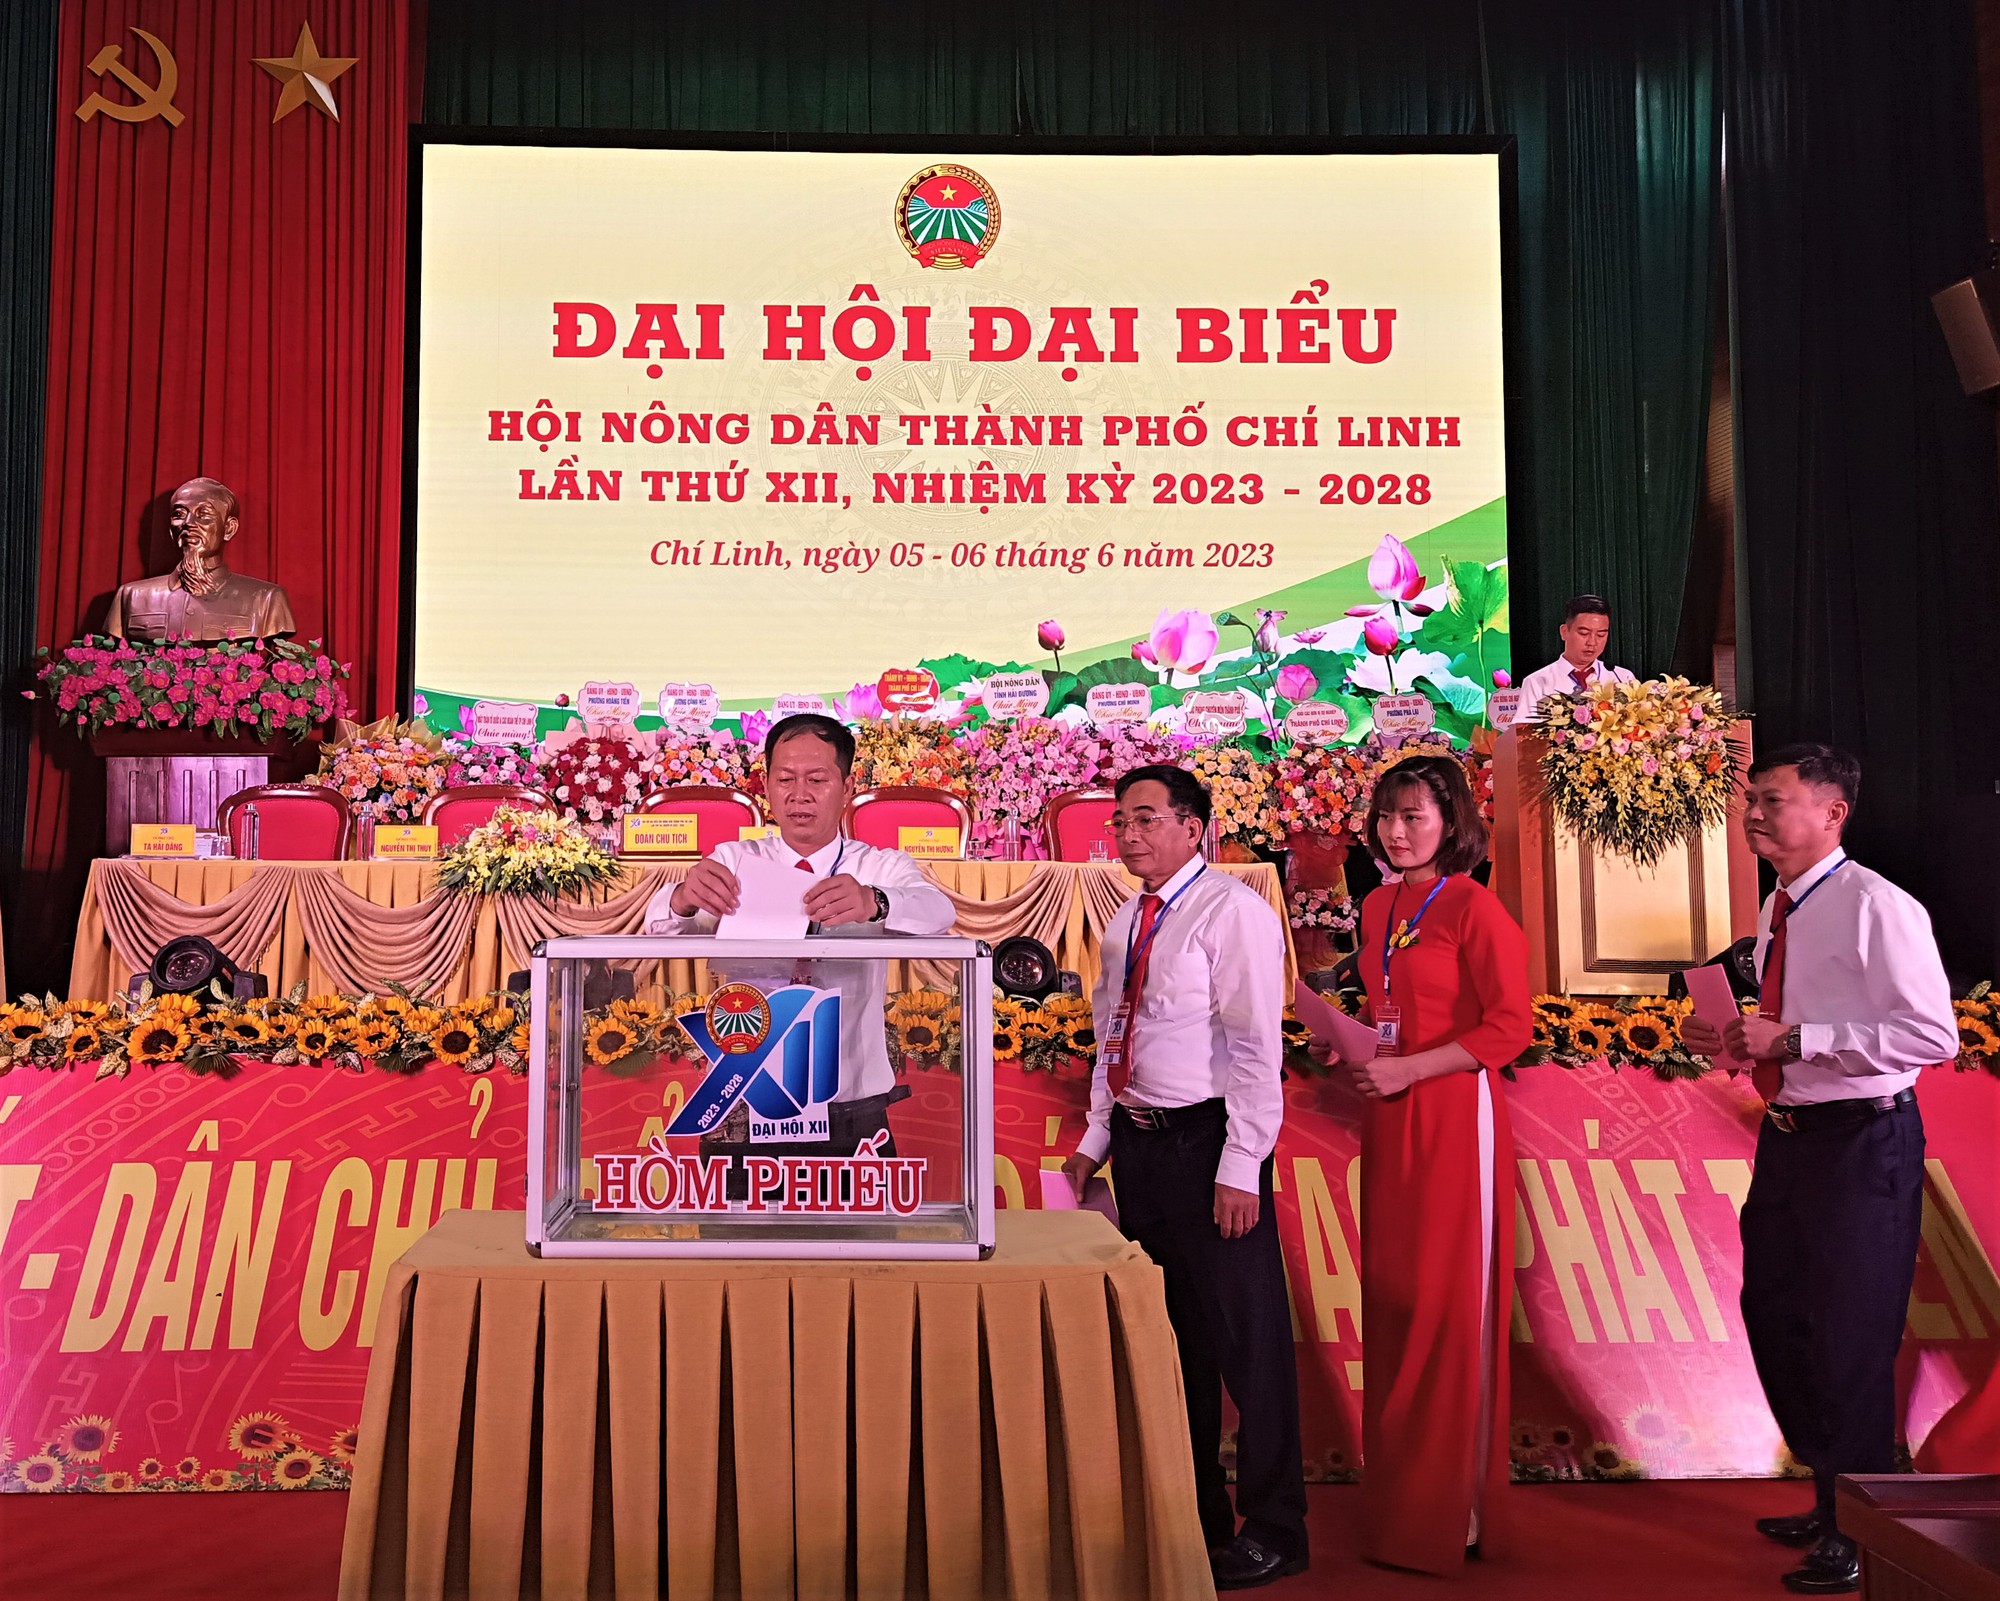 Ông Nguyễn Như Nguyện tái đắc cử Chủ tịch Hội Nông dân TP Chí Linh nhiệm kỳ 2023 - 2028 - Ảnh 1.